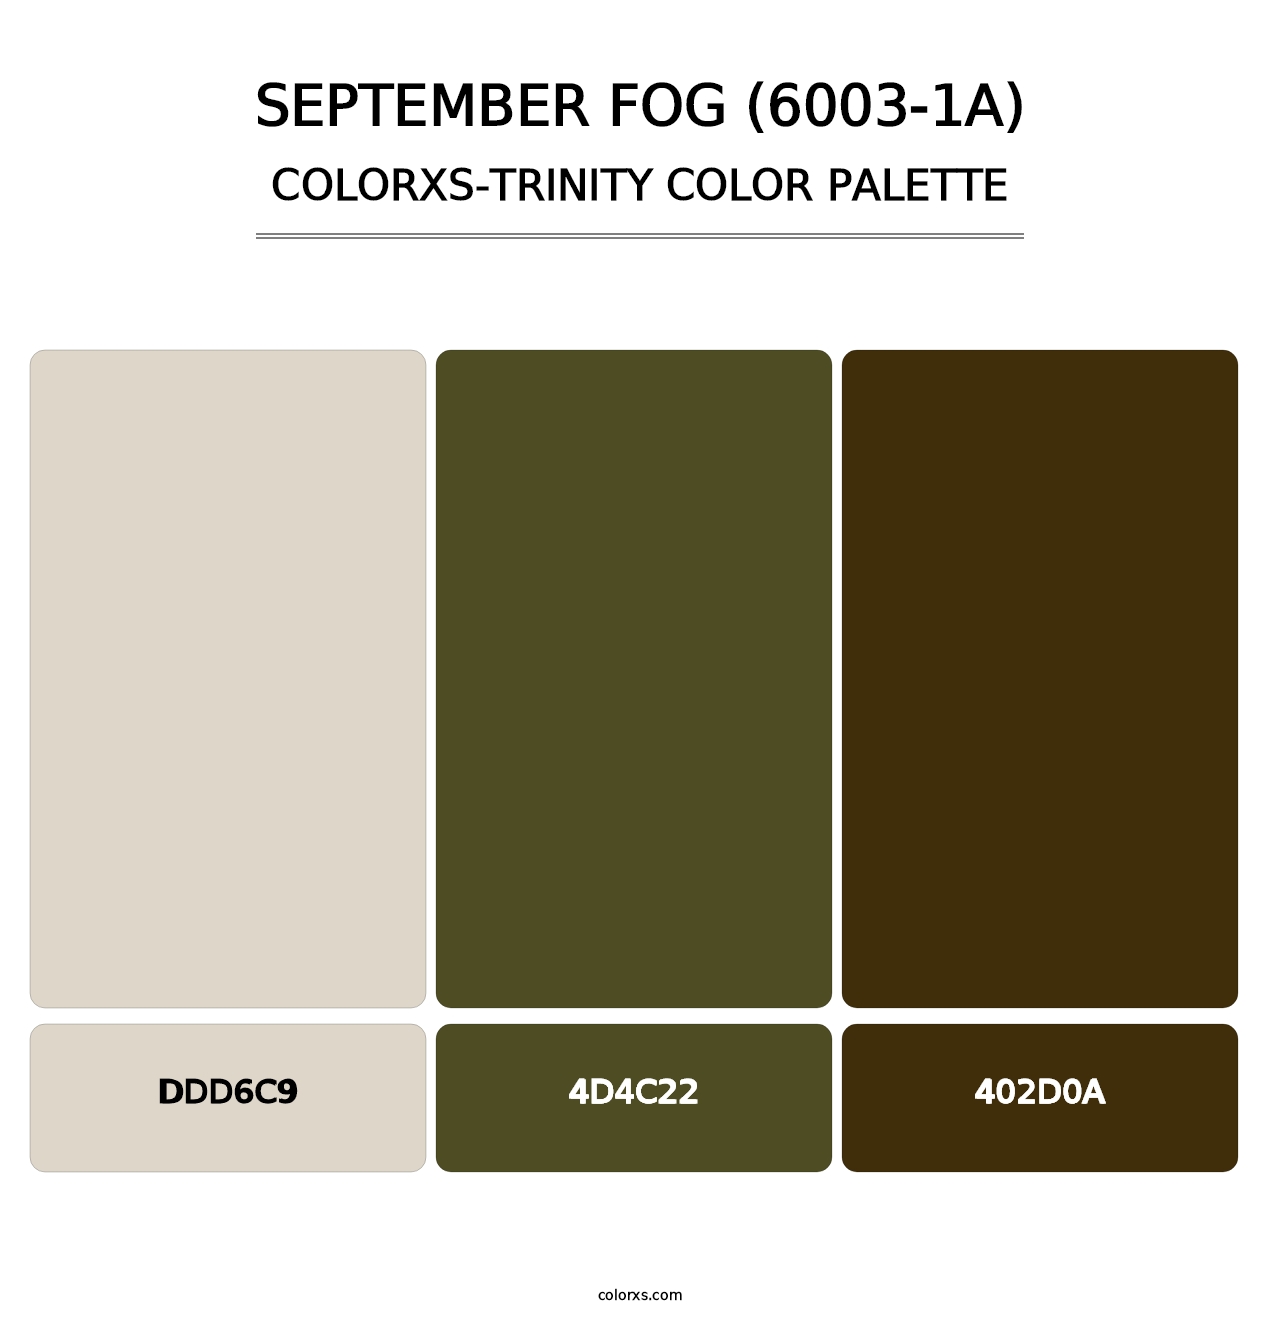 September Fog (6003-1A) - Colorxs Trinity Palette